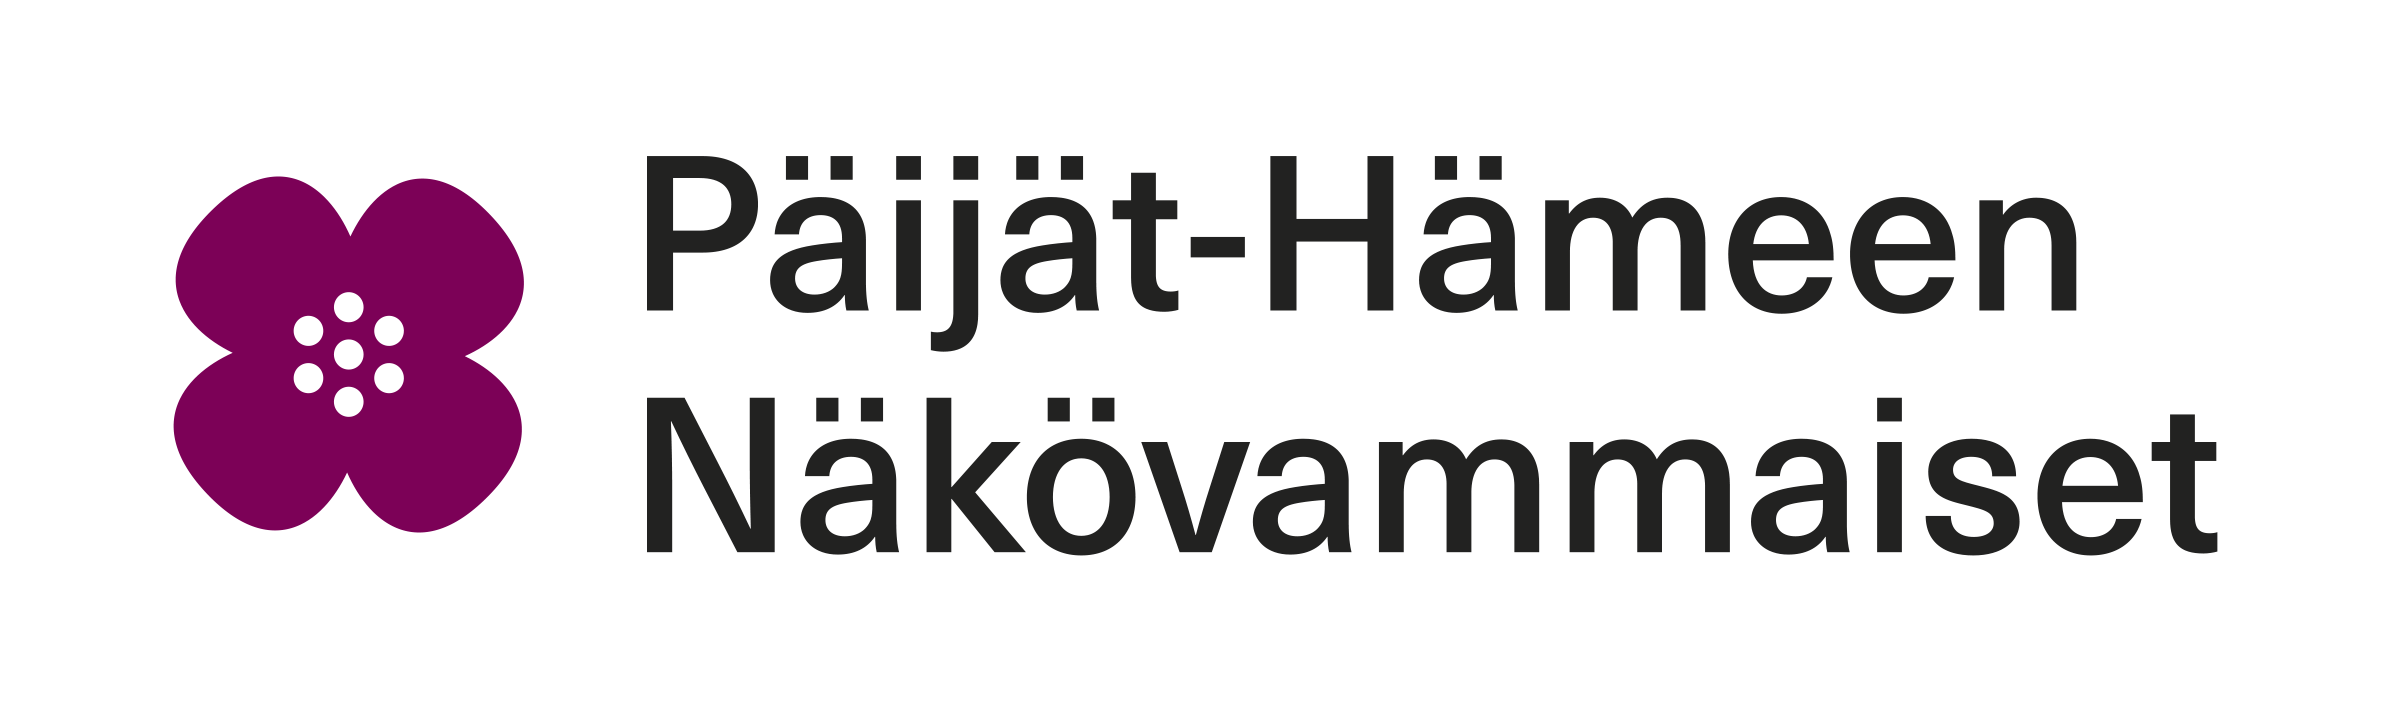 Päijät-Hämeen Näkövammaisten logo.